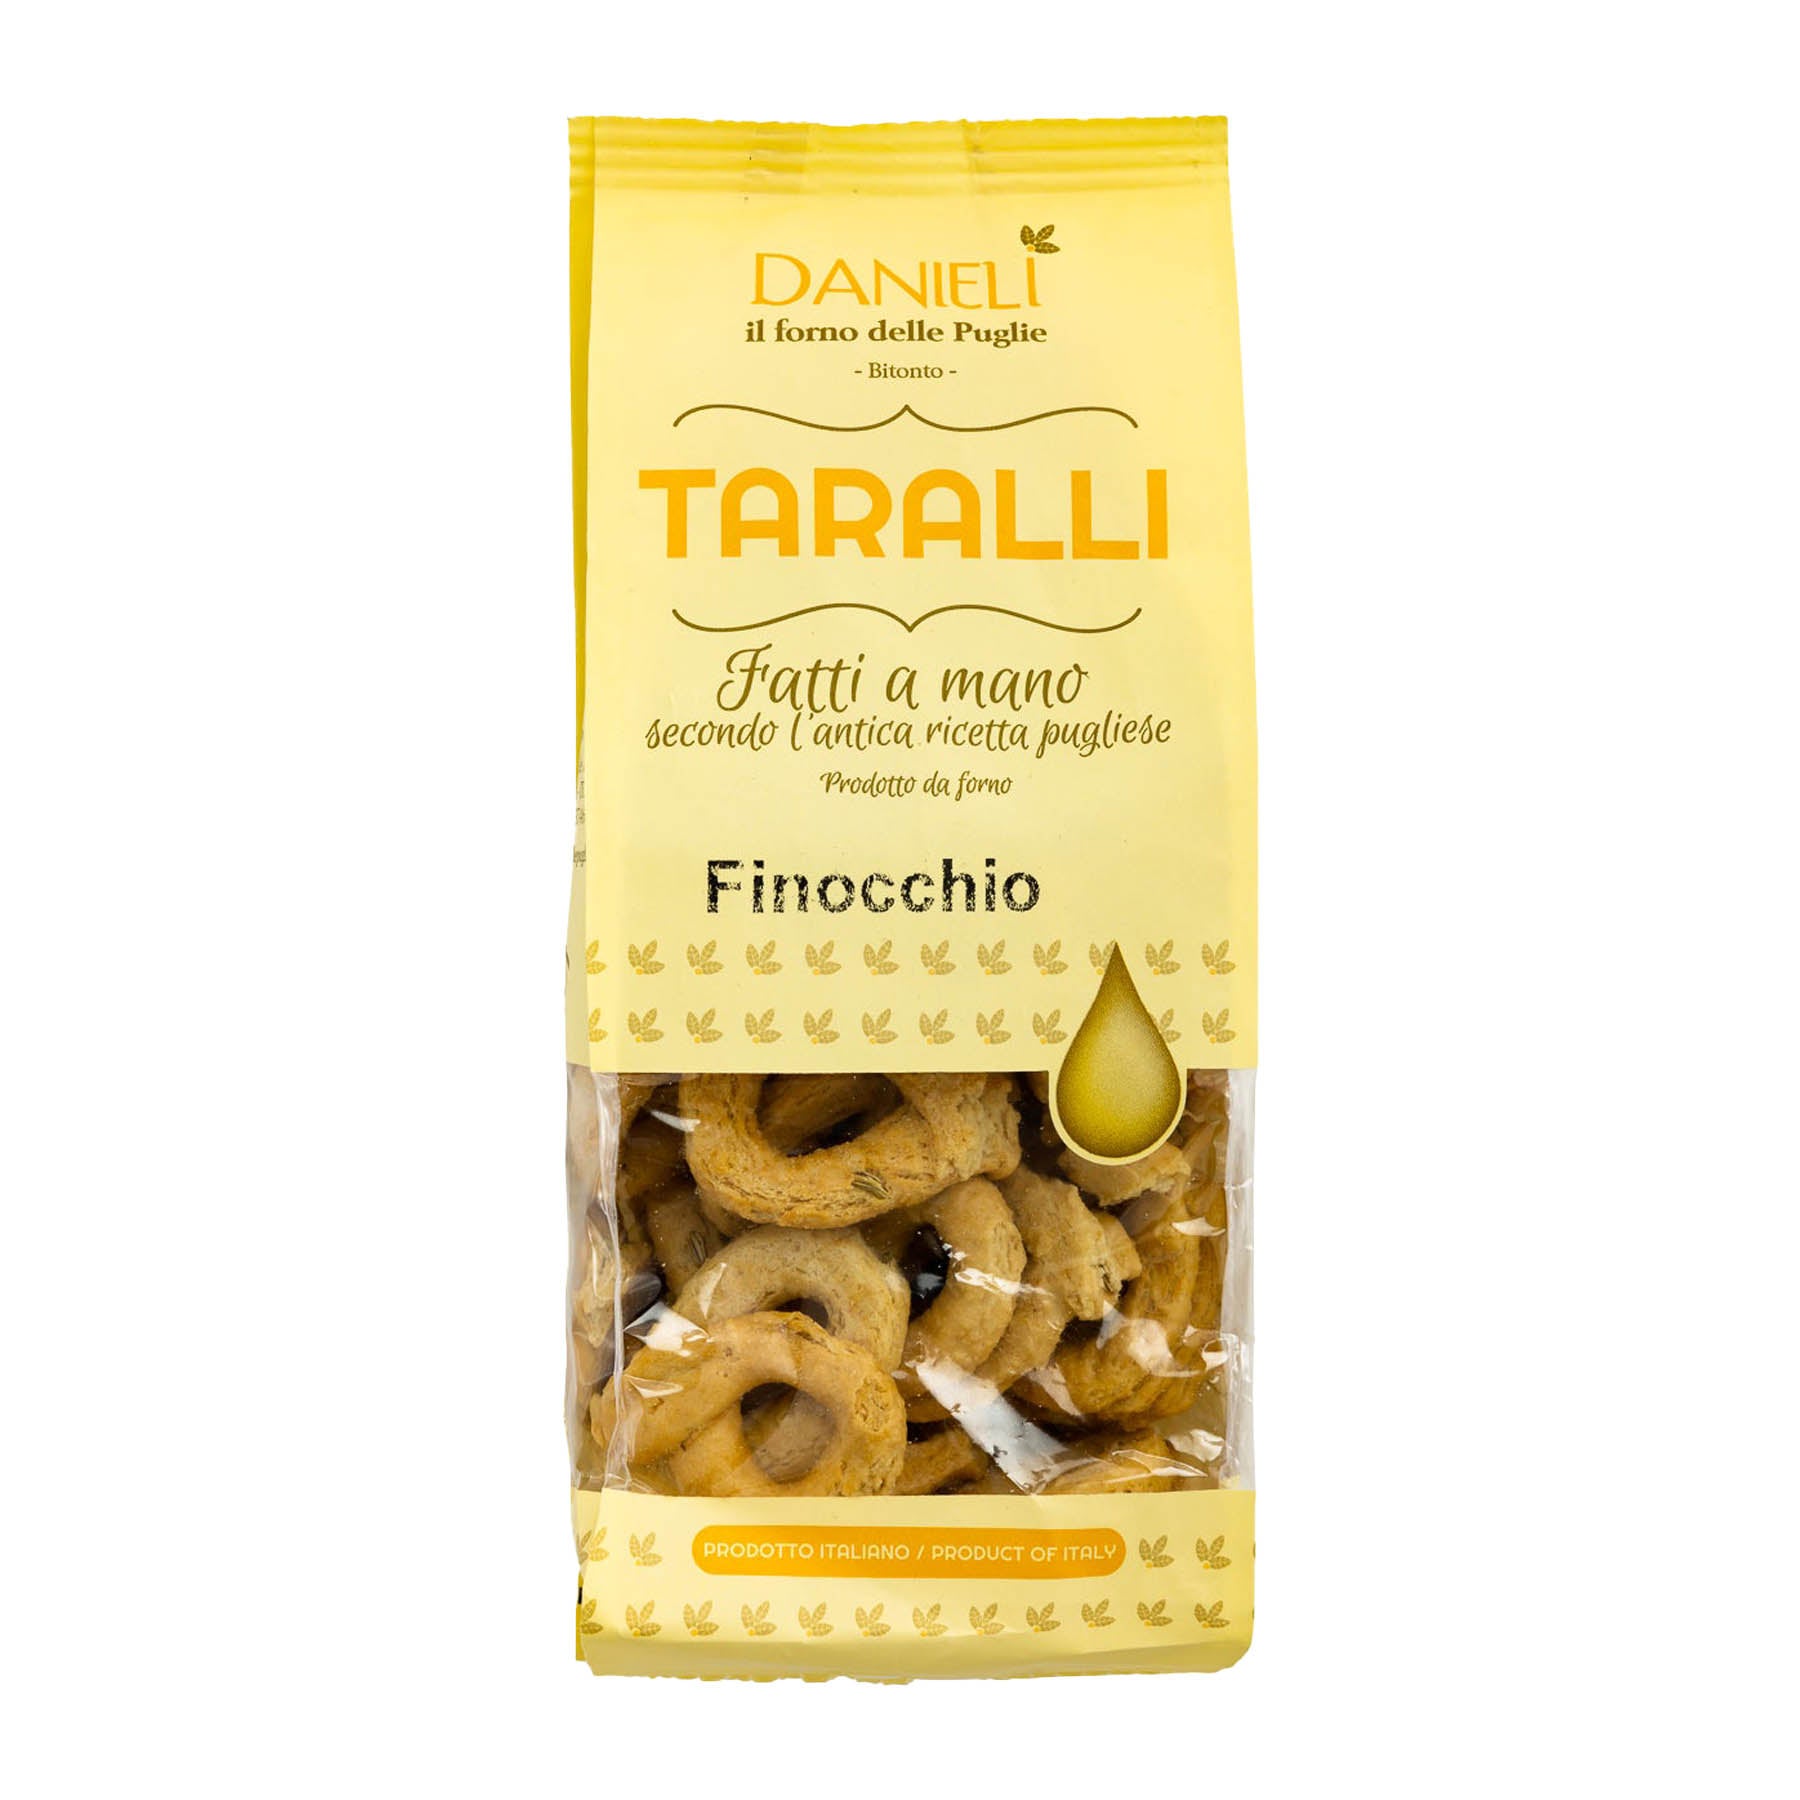 Taralli - nach traditionellem Rezept aus Apulien